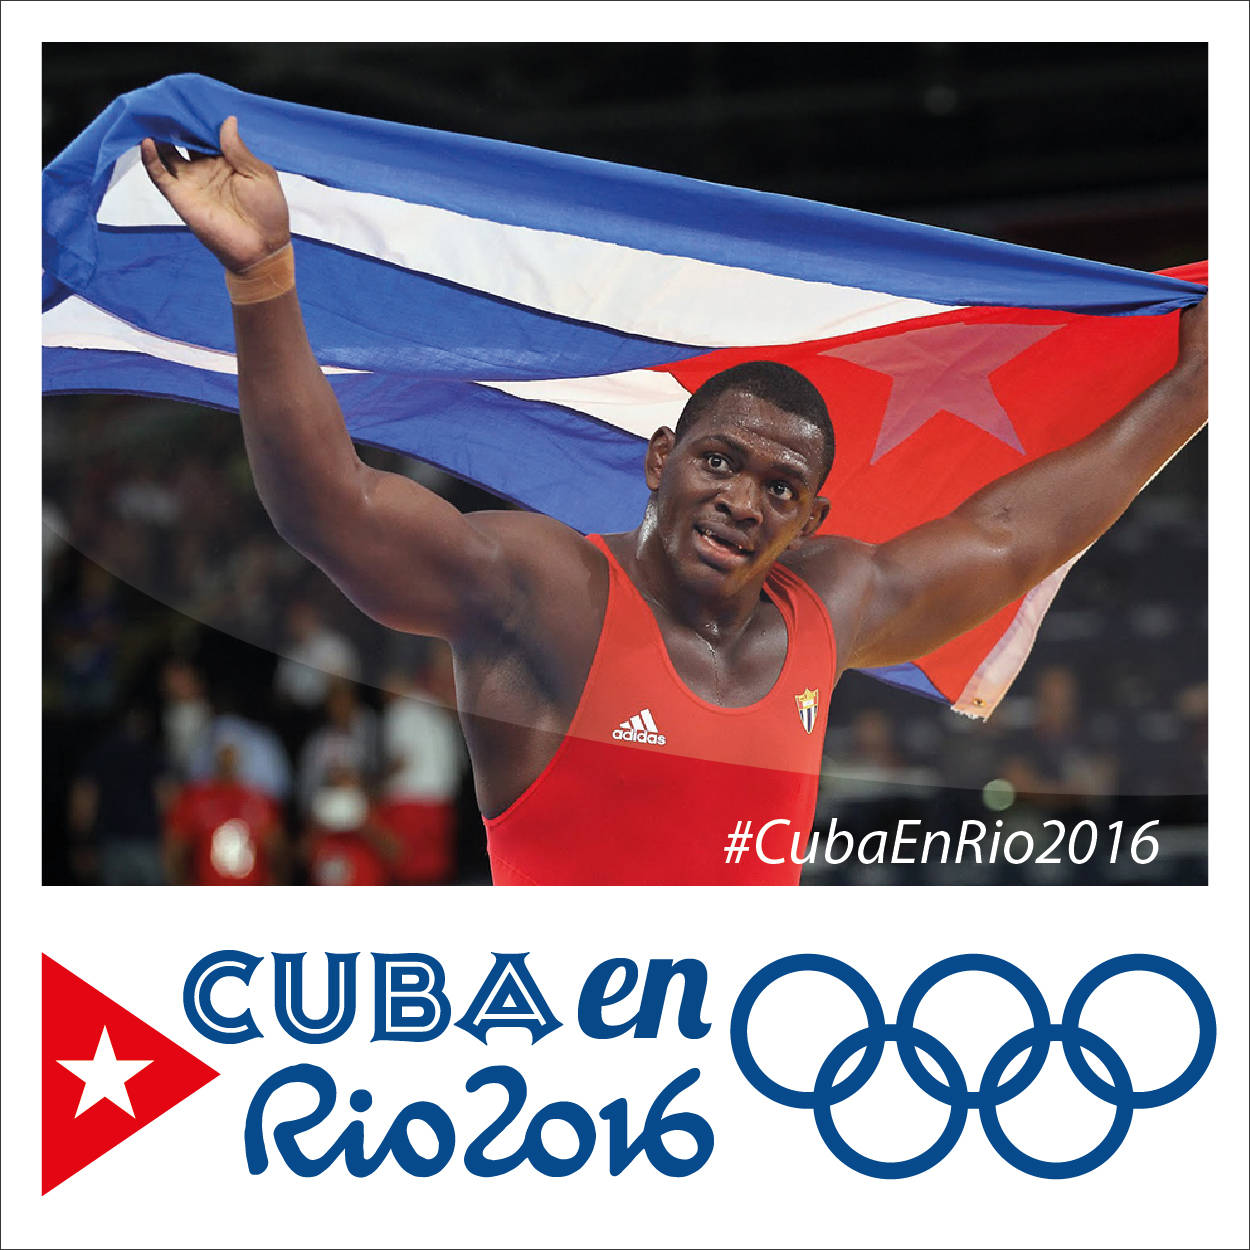 Cuba-en-R%C3%ADo-2016-Banner.jpg